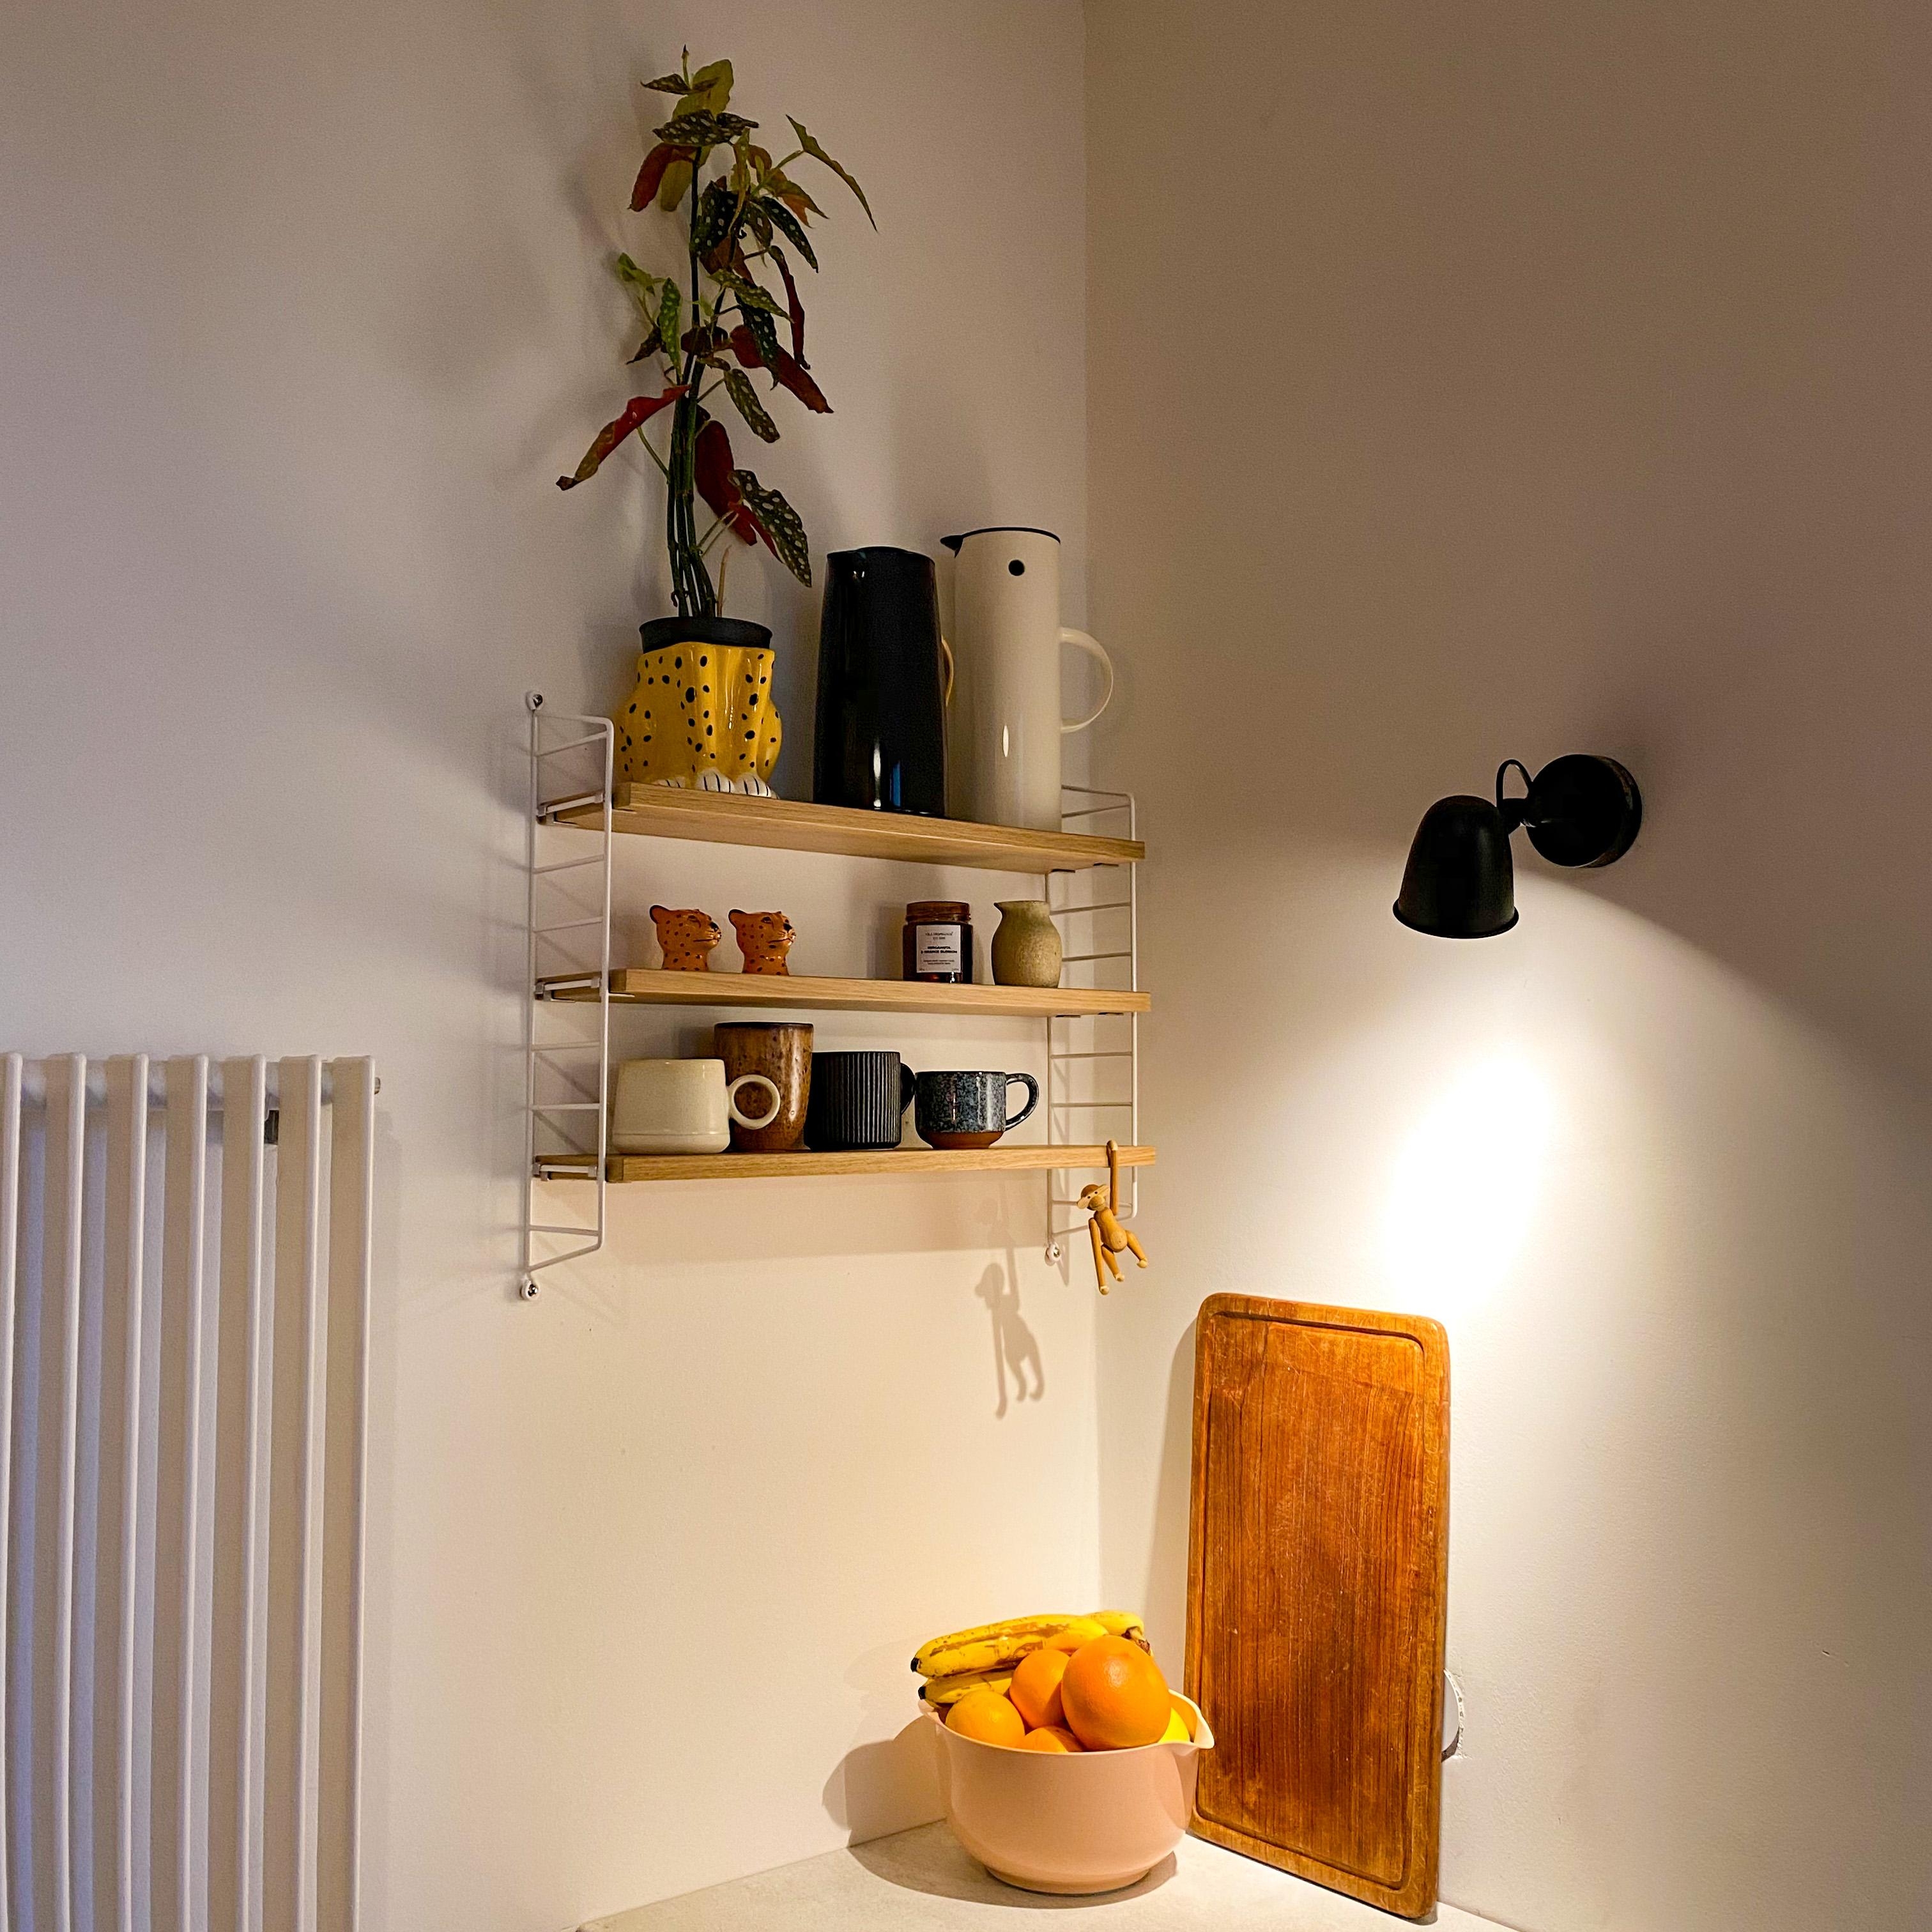 Unser Aufbewahrungsort in der Küche für die Dinge, die man am liebsten hat. 

#küche#kücheninspo